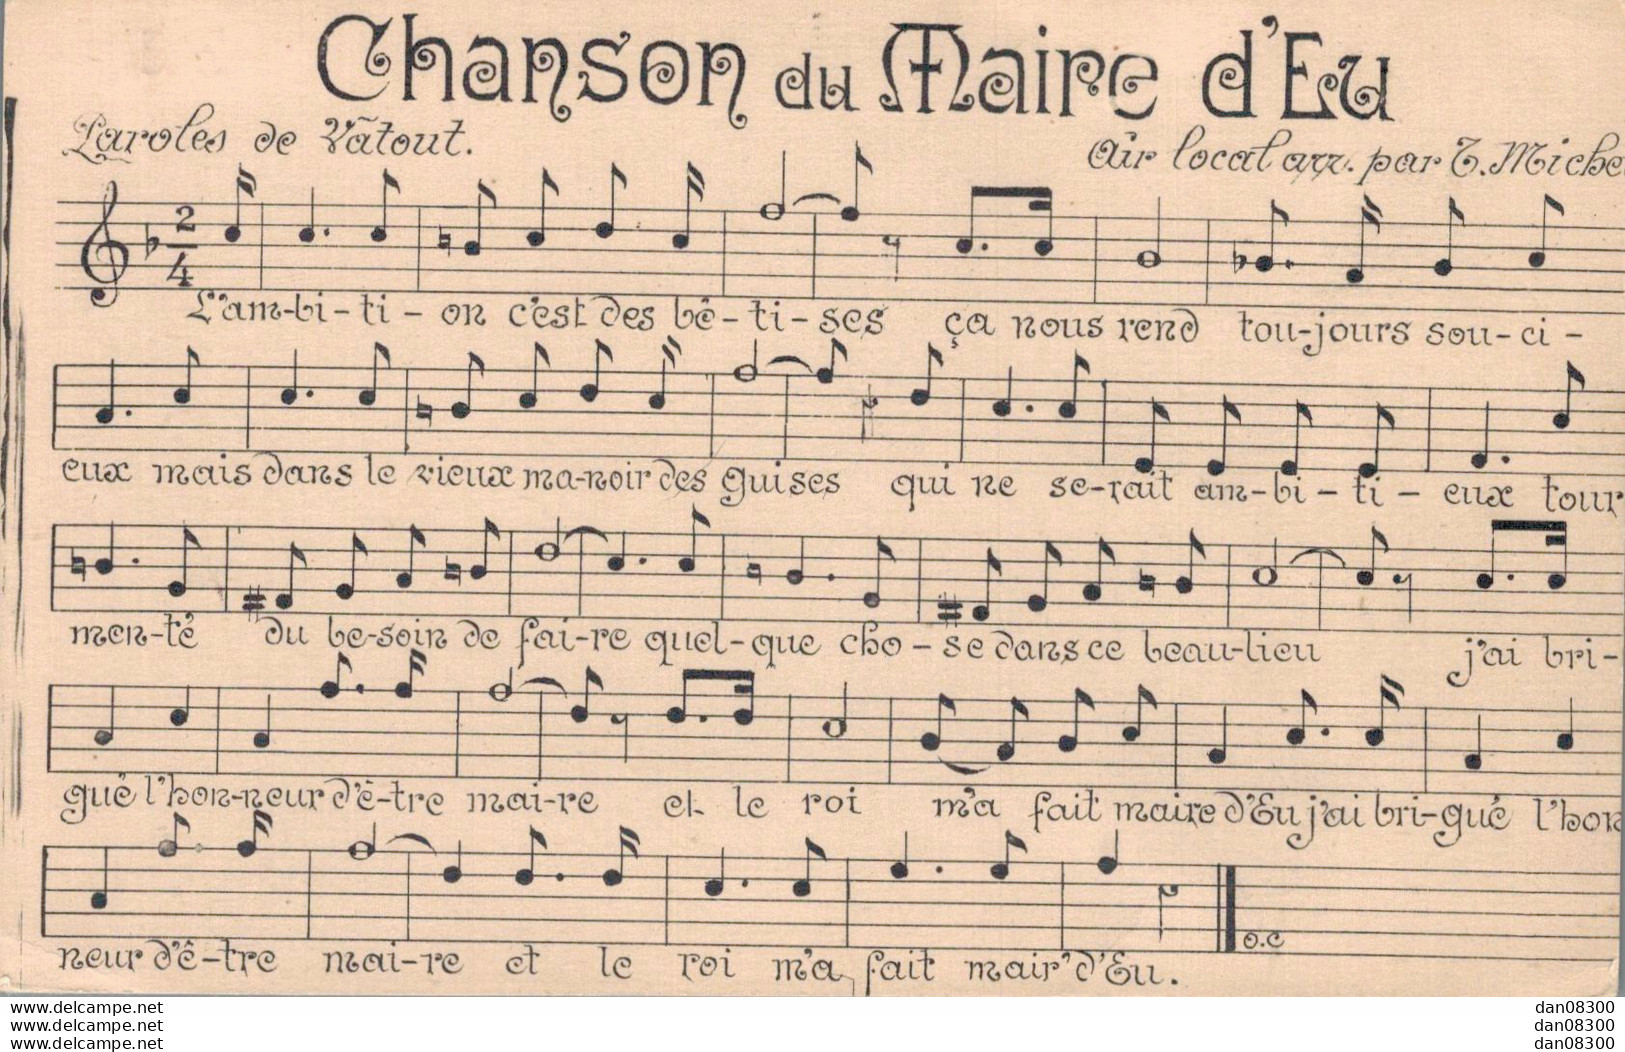 76 CHANSON DU MAIRE D'EU - Musique